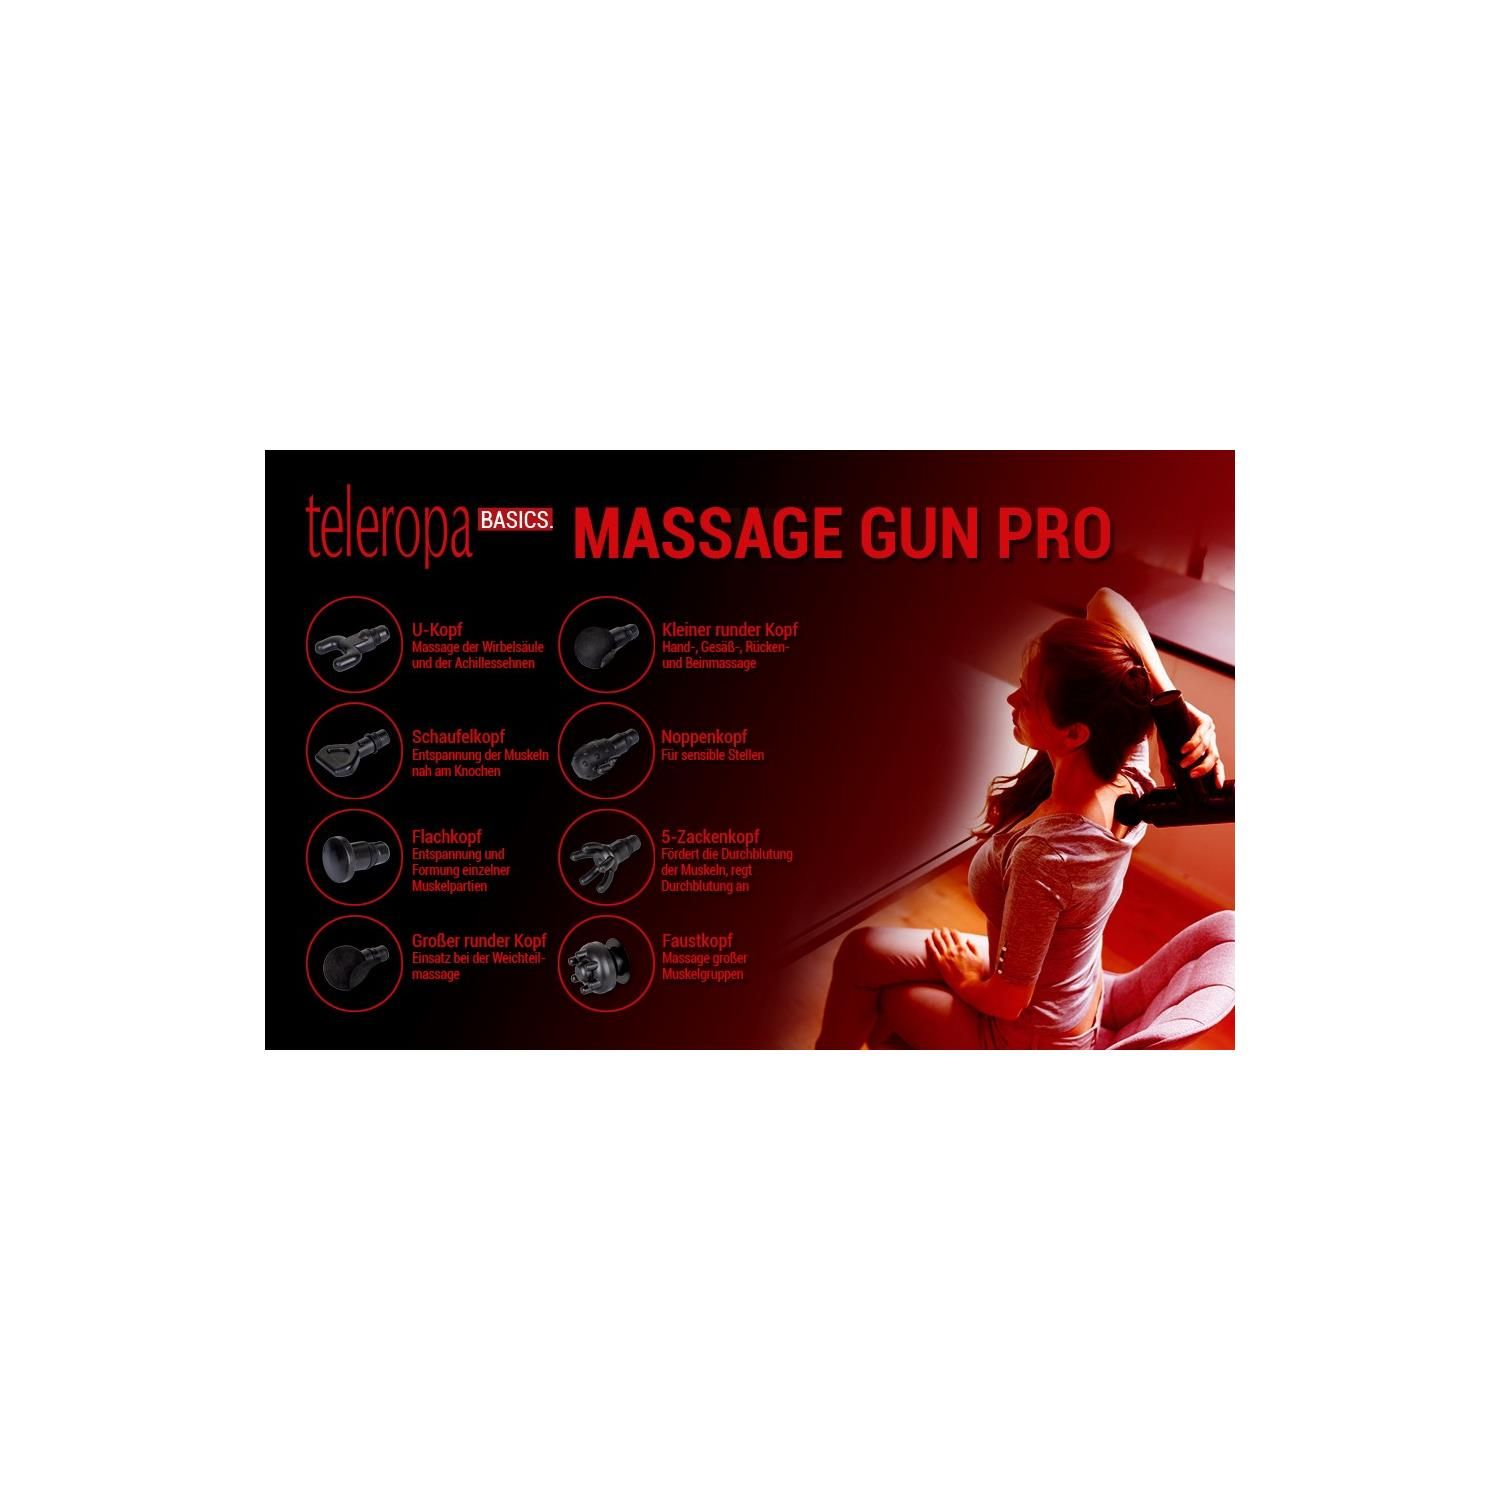 TELEROPA Gun Massage-Pistole Pro Massage BASICS